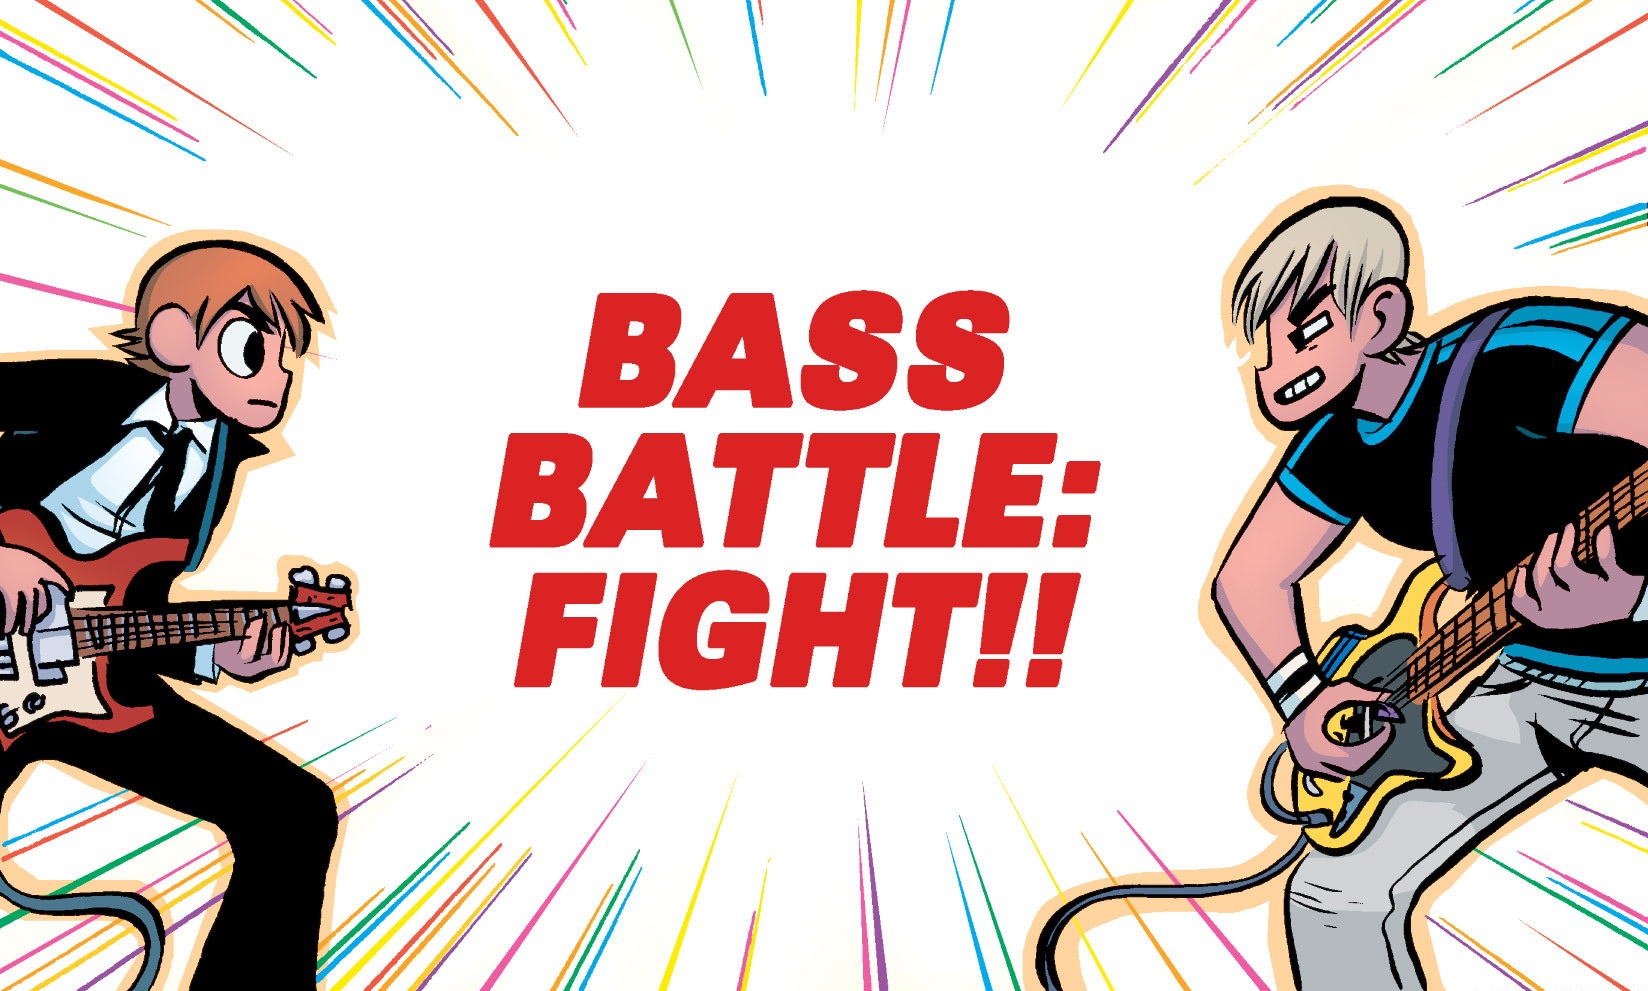 Bass Battle